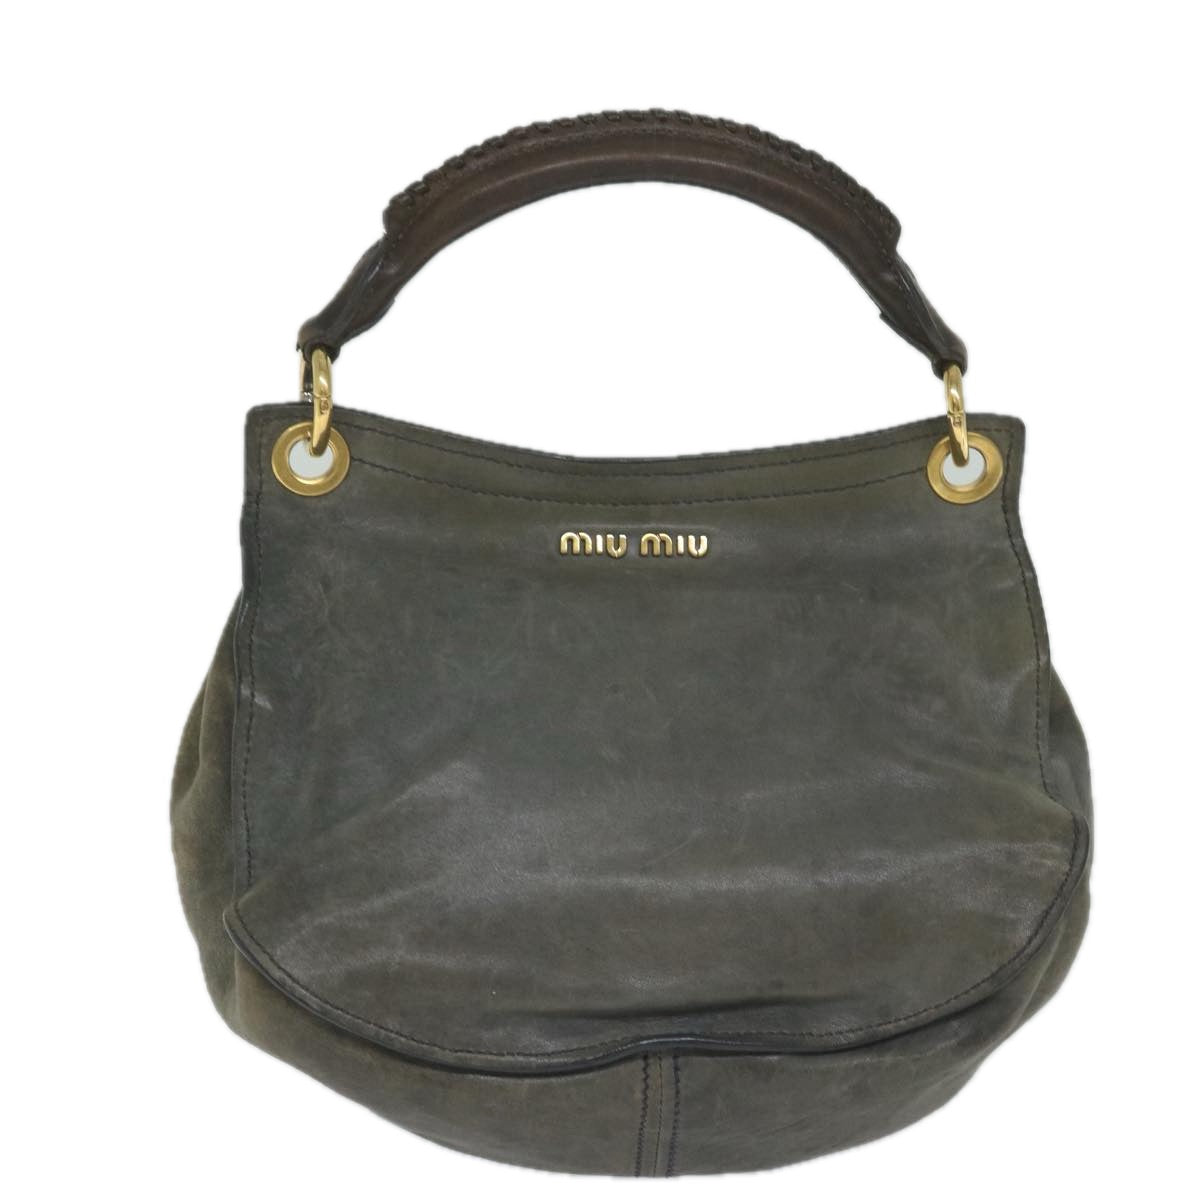 Miu Miu Hand Bag Leather 2way Gray Auth hk946 - 0